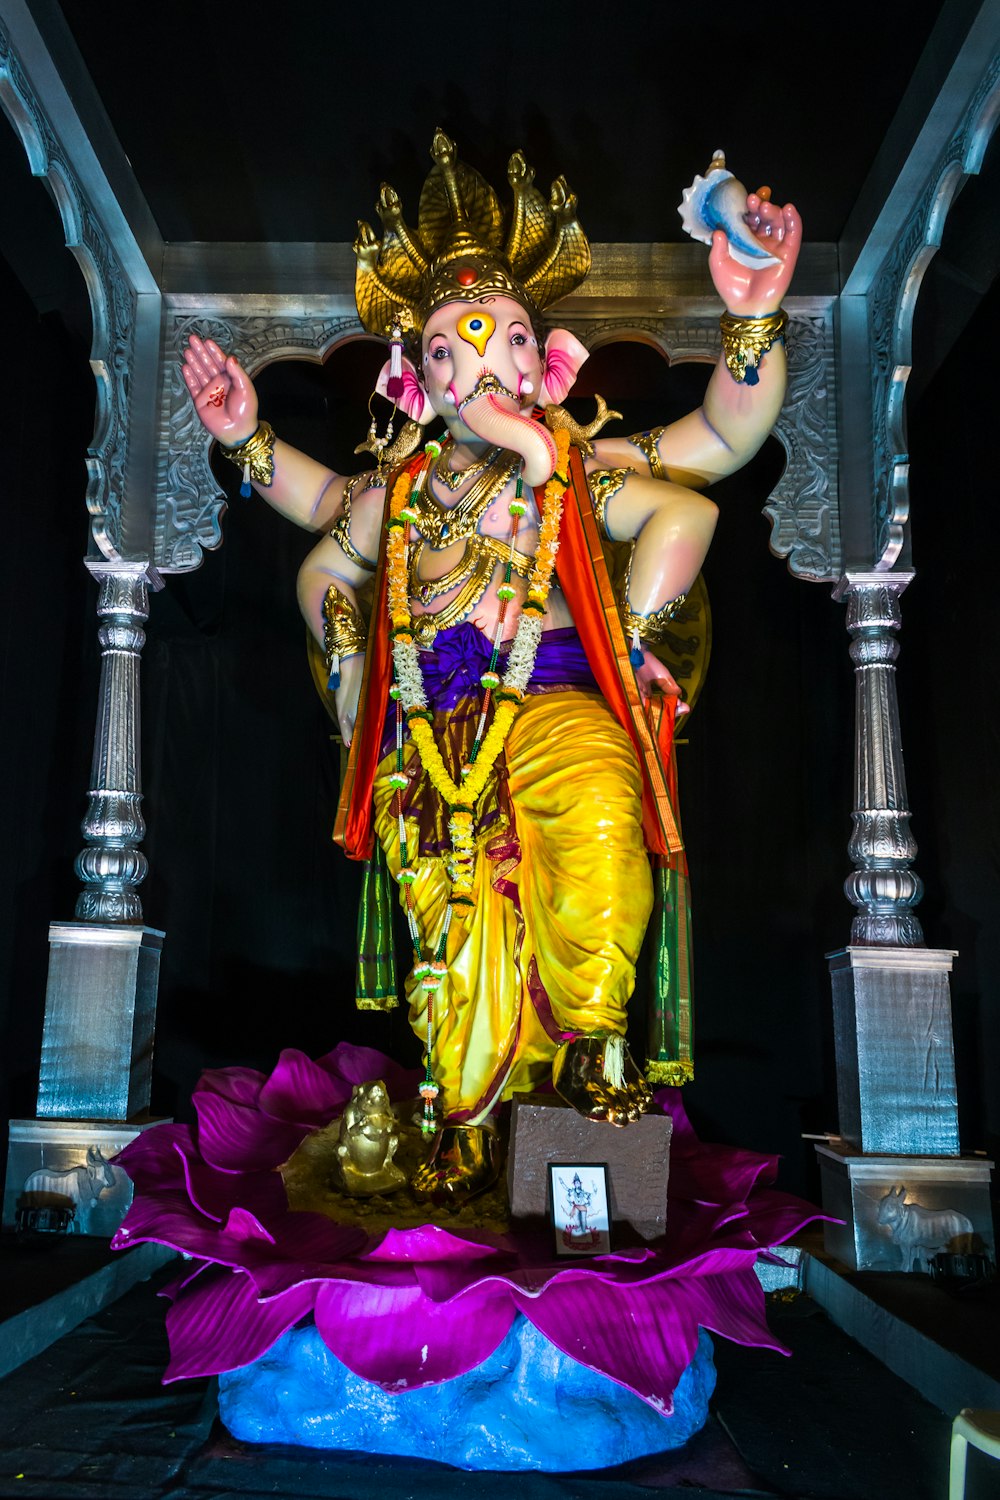 hindu deity figurine on table